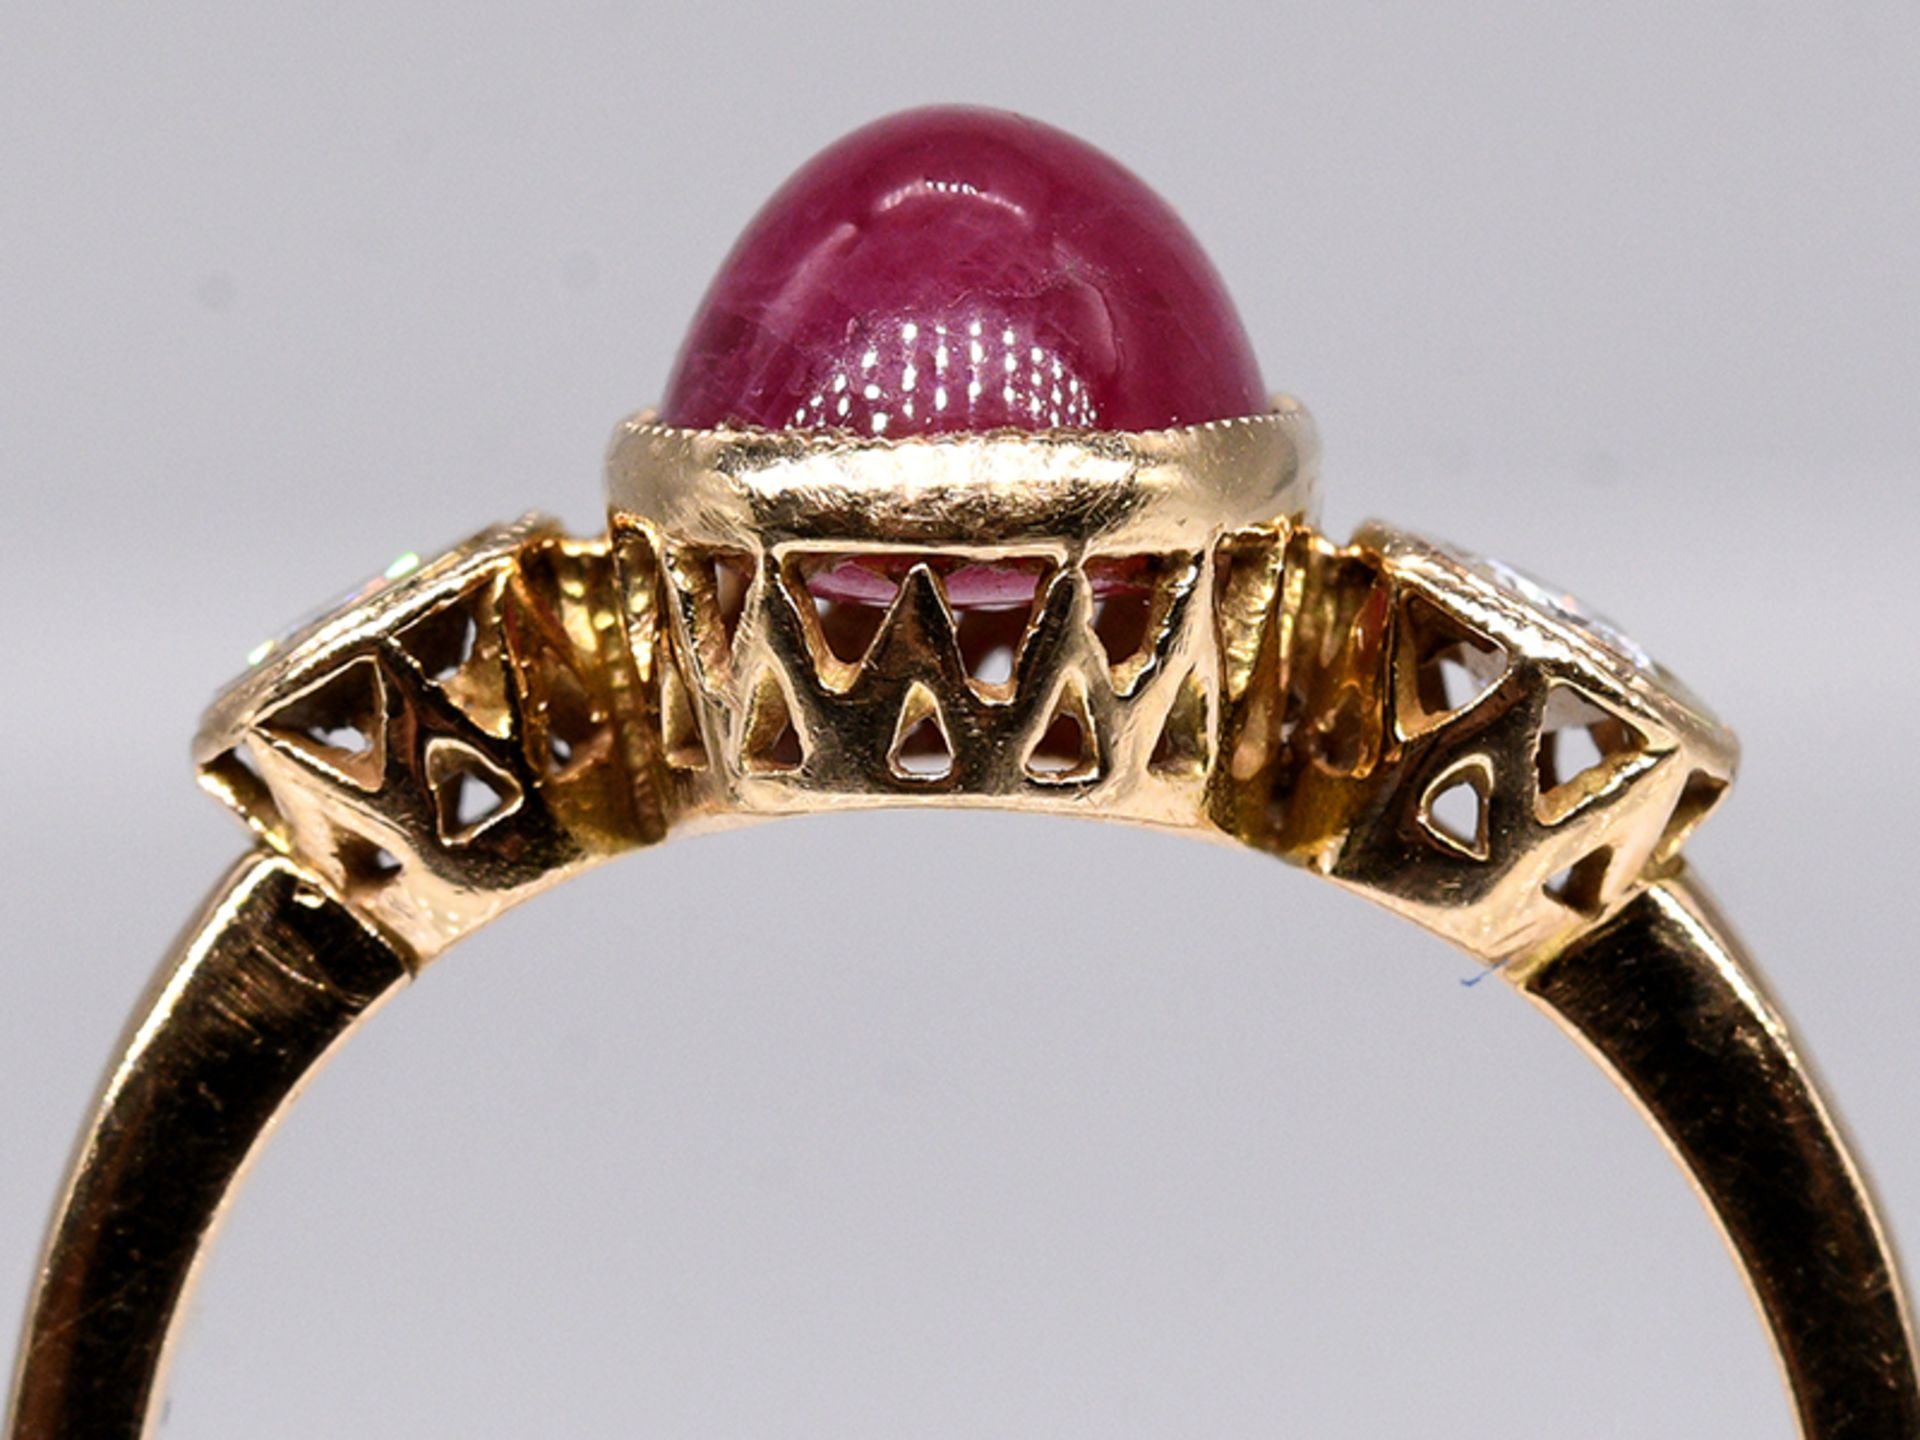 Ring mit Rubin-Cabochon und 2 Brillanten, zus. ca. 0,15 ct, 80- er Jahre. 585/- Gelbgold. - Image 2 of 4